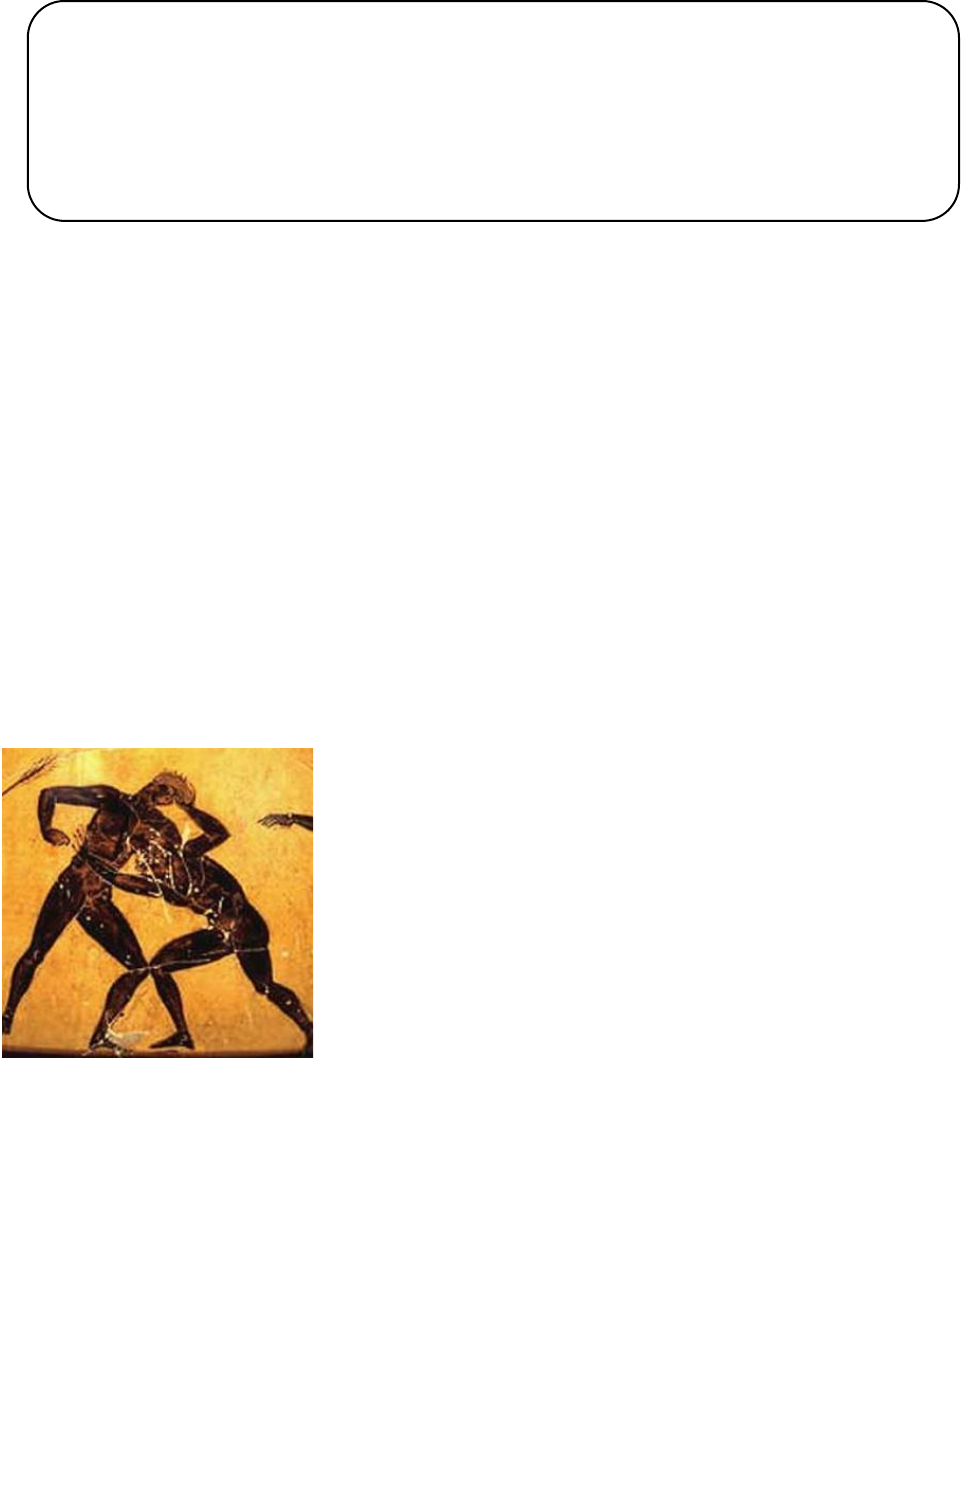 REDE FAETEC - Luta Olímpica é o nome dado a dois estilos de lutas (livre e  greco-romana) que são disputadas nas Olimpíadas. A luta greco-romana teve  sua origem na Grécia Antiga e